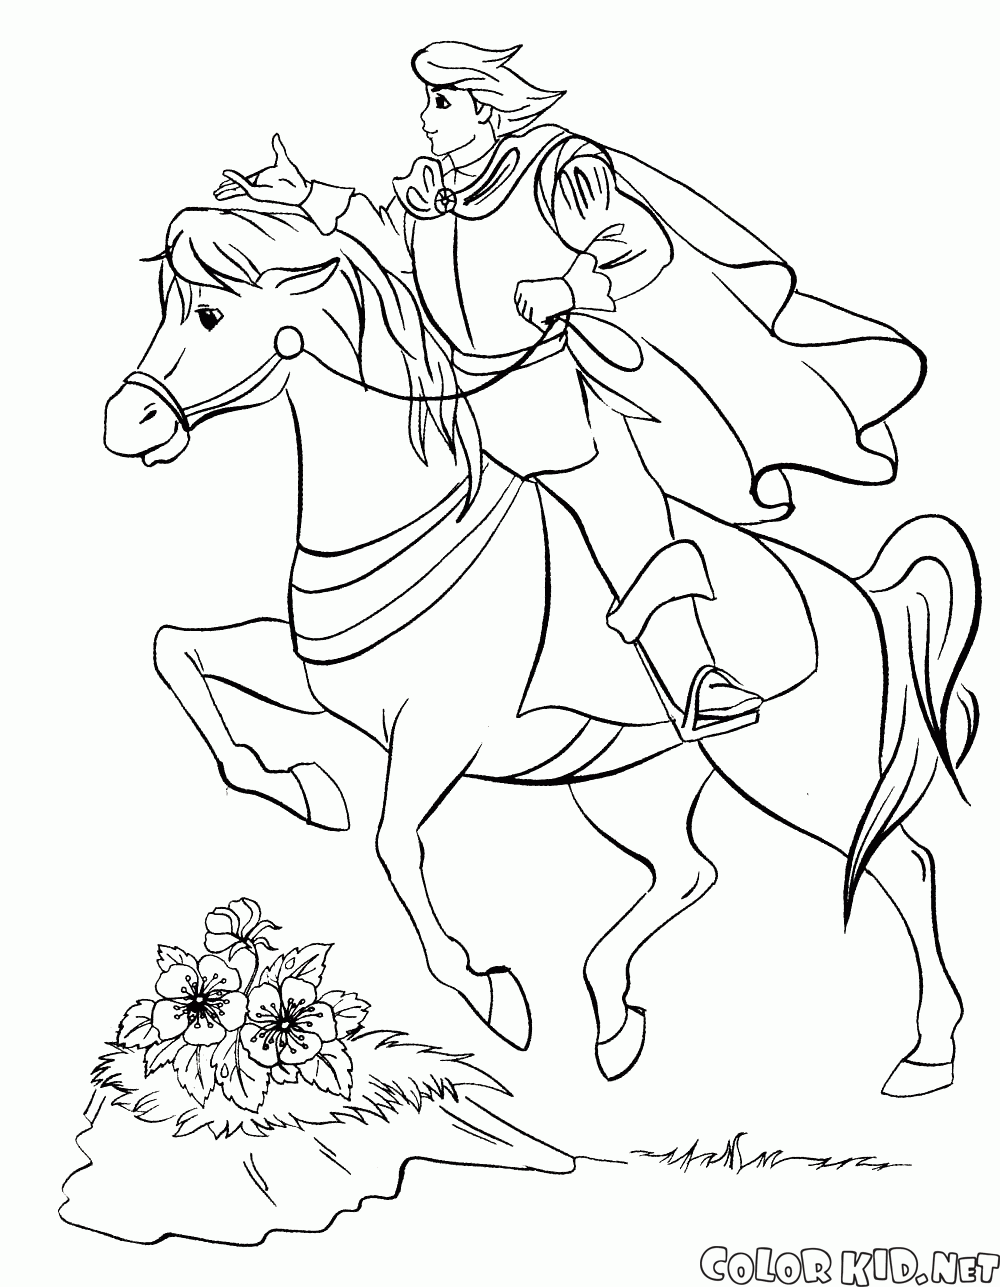 Príncipe a caballo